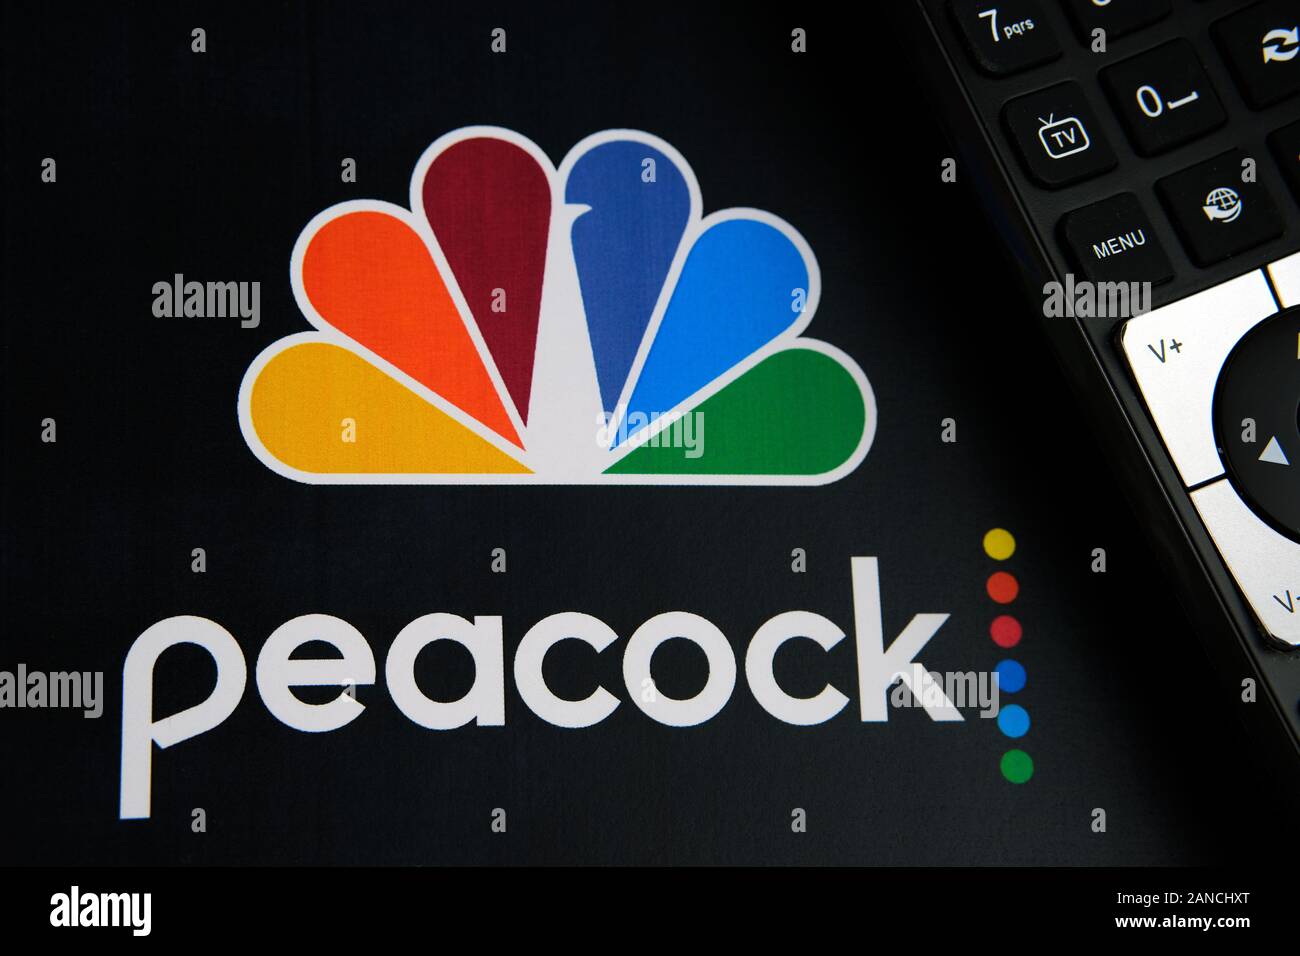 Peacock video streaming service logo sur la brochure papier et la télécommande à côté. Par NBCUniversal, une filiale de Comcast. Banque D'Images